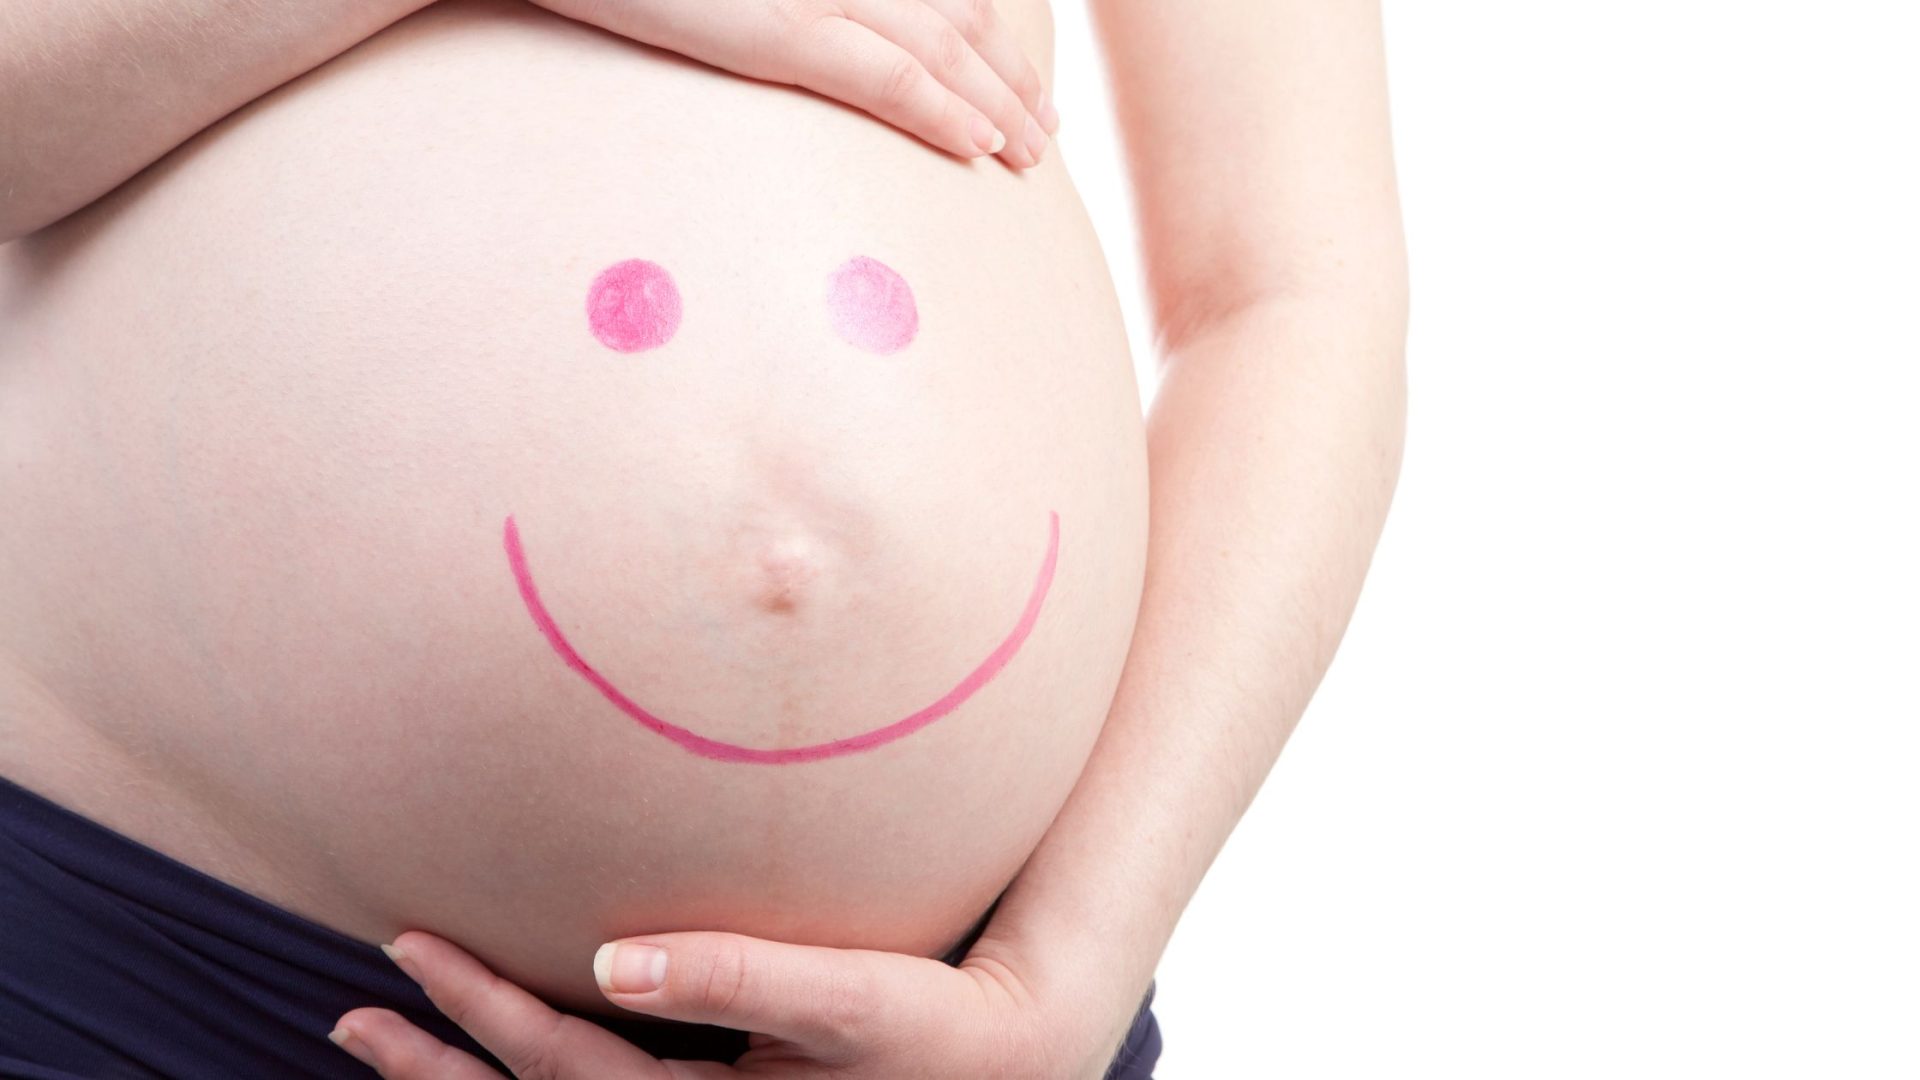 Κοιλιά εγκύου με ζωγραφισμένη χαμογελαστή φάτσα, παρουσιάζοντας την υπηρεσία "Prenatal Blossom Ritual" για χαλάρωση της μητέρας προς το παιδί. Prenatal Blossom Ritual - Relaxation for Expecting Mothers